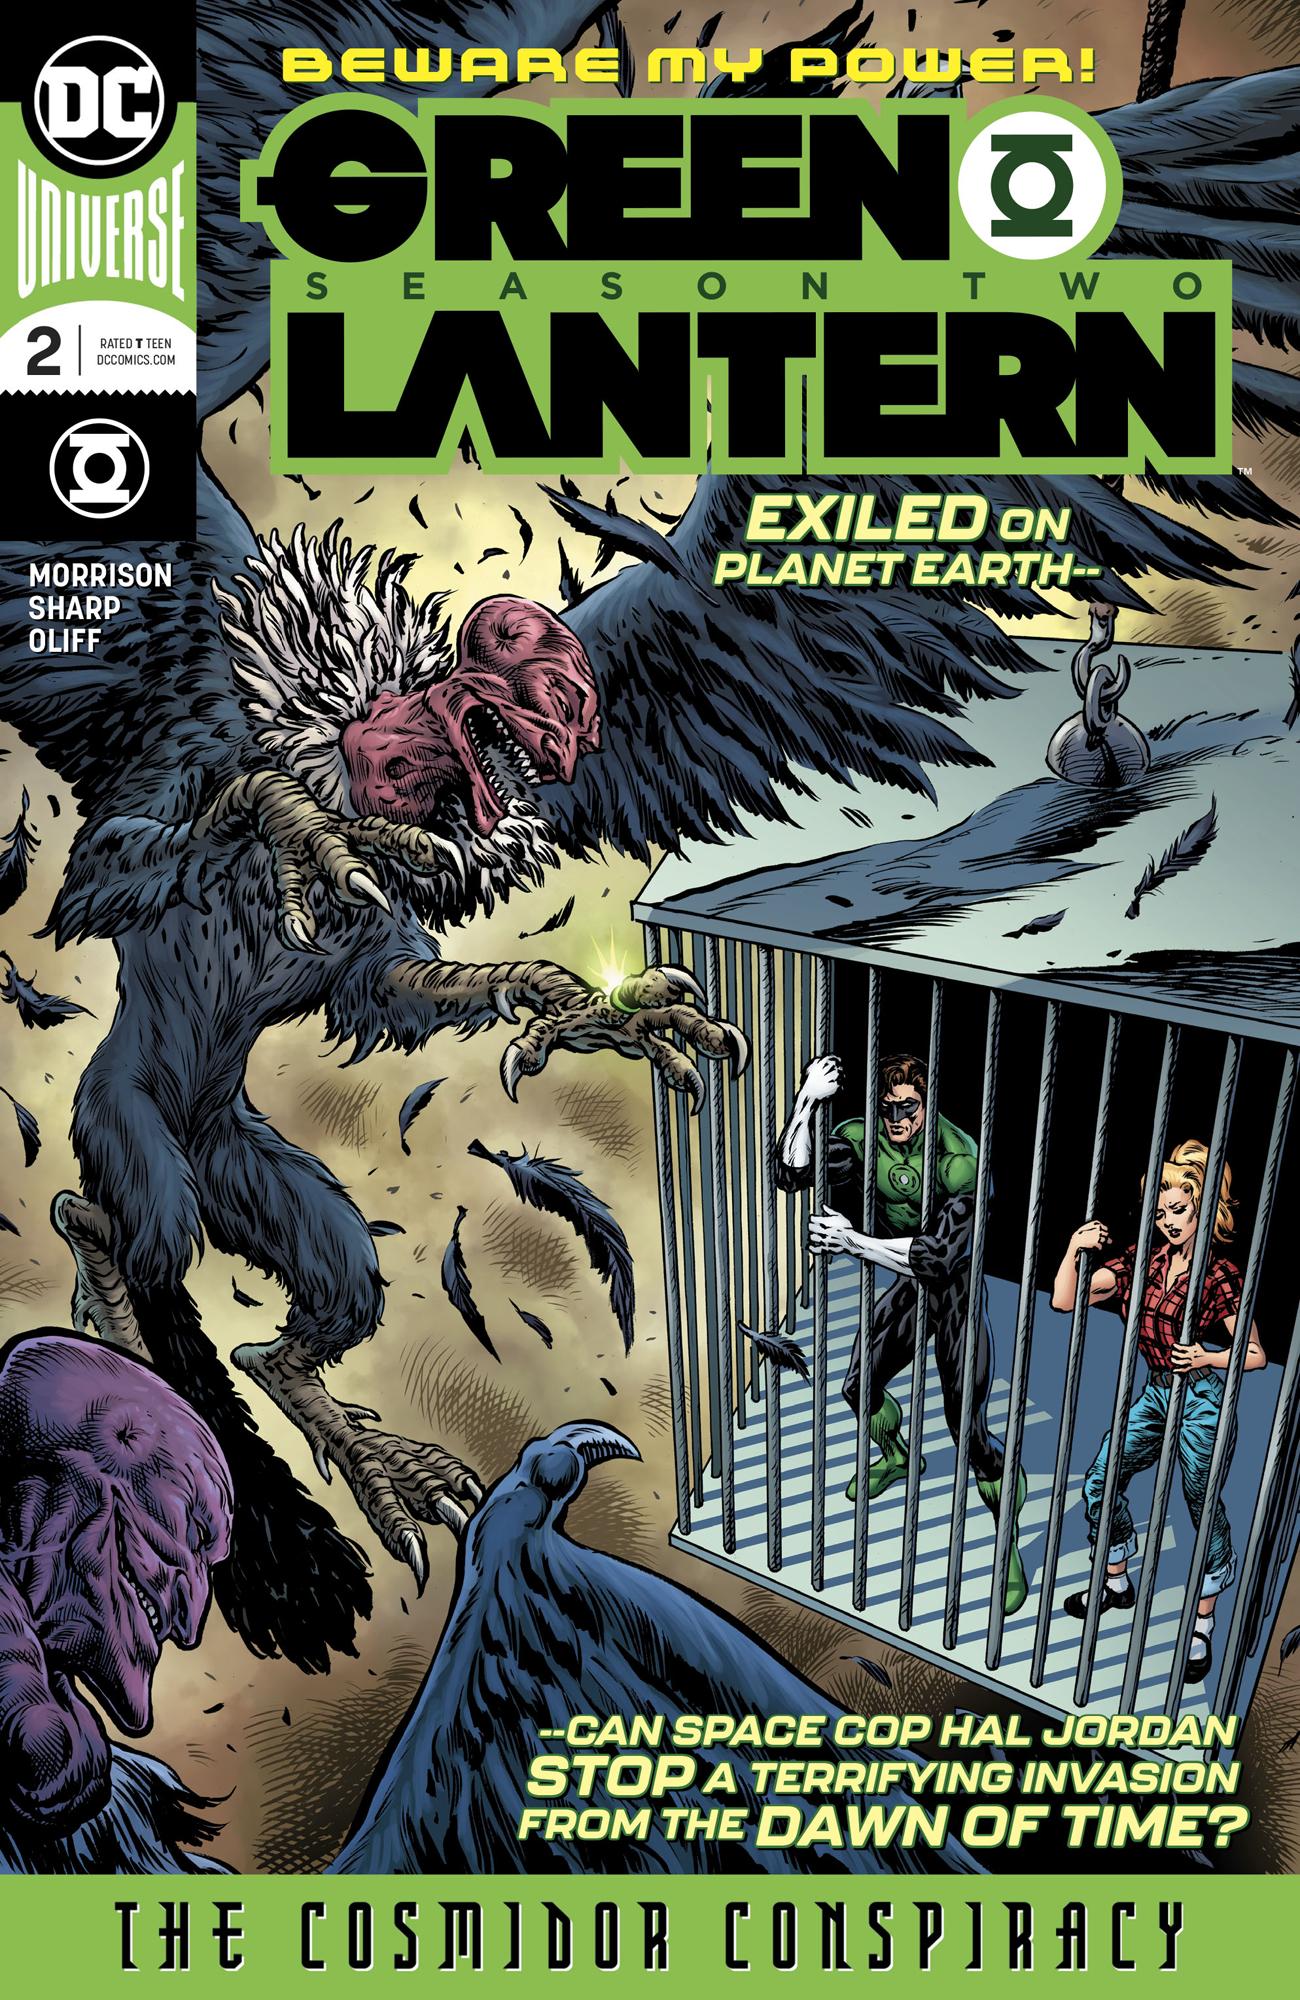 DC Comics GREEN LANTERN SEASON 2 #2 (OF 12)